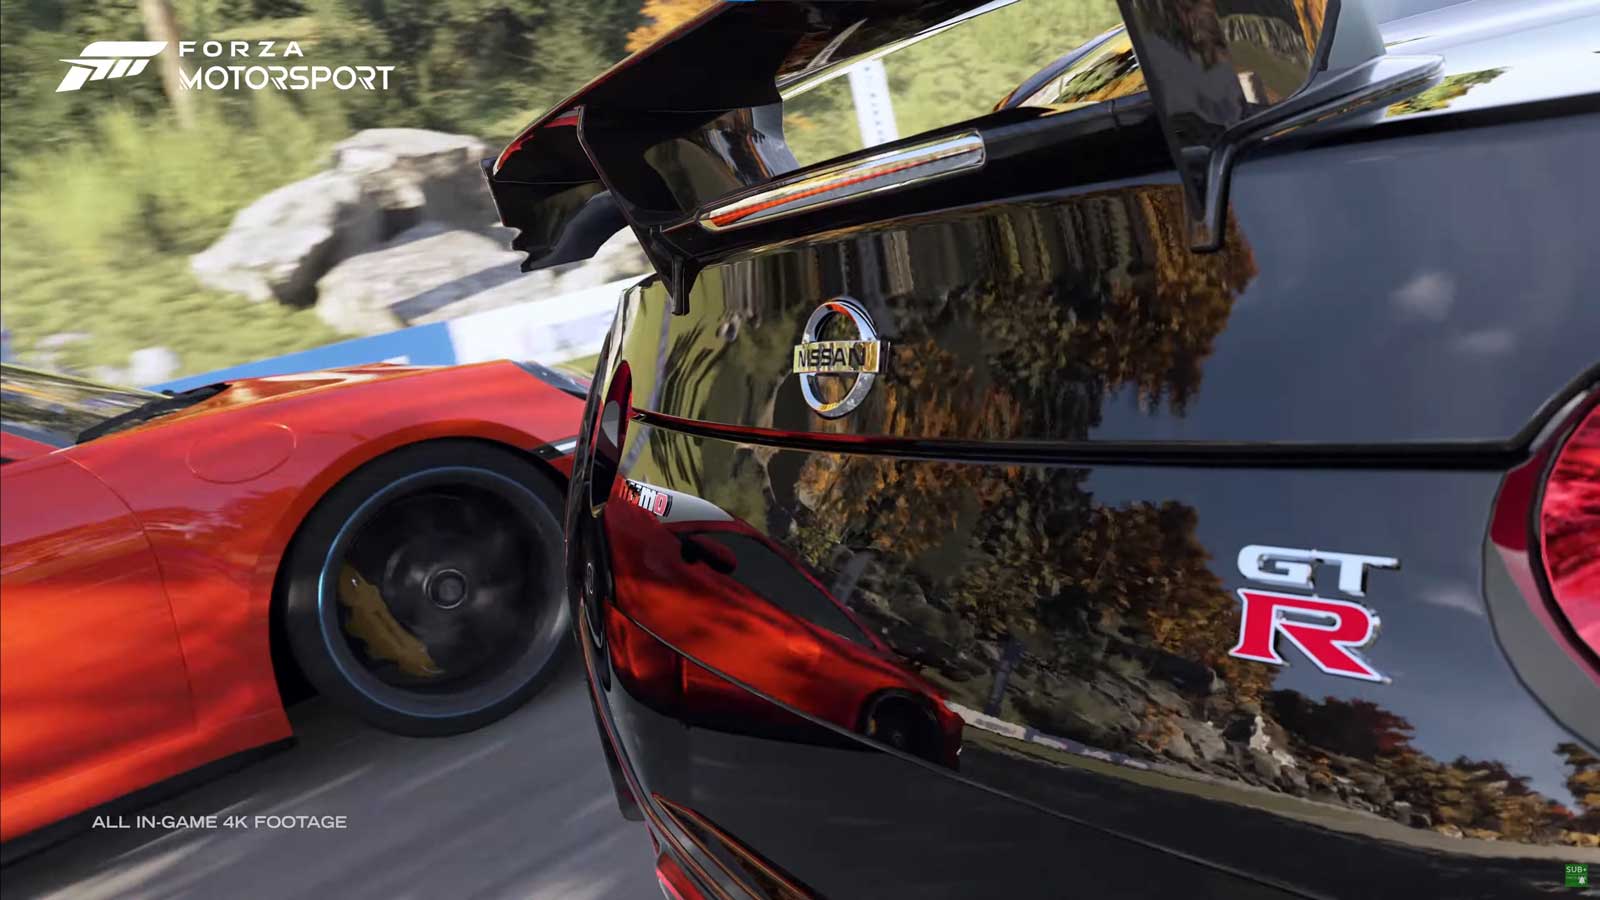 Reflección ambiental en superficie metálica del juego Forza Motorsport 7.